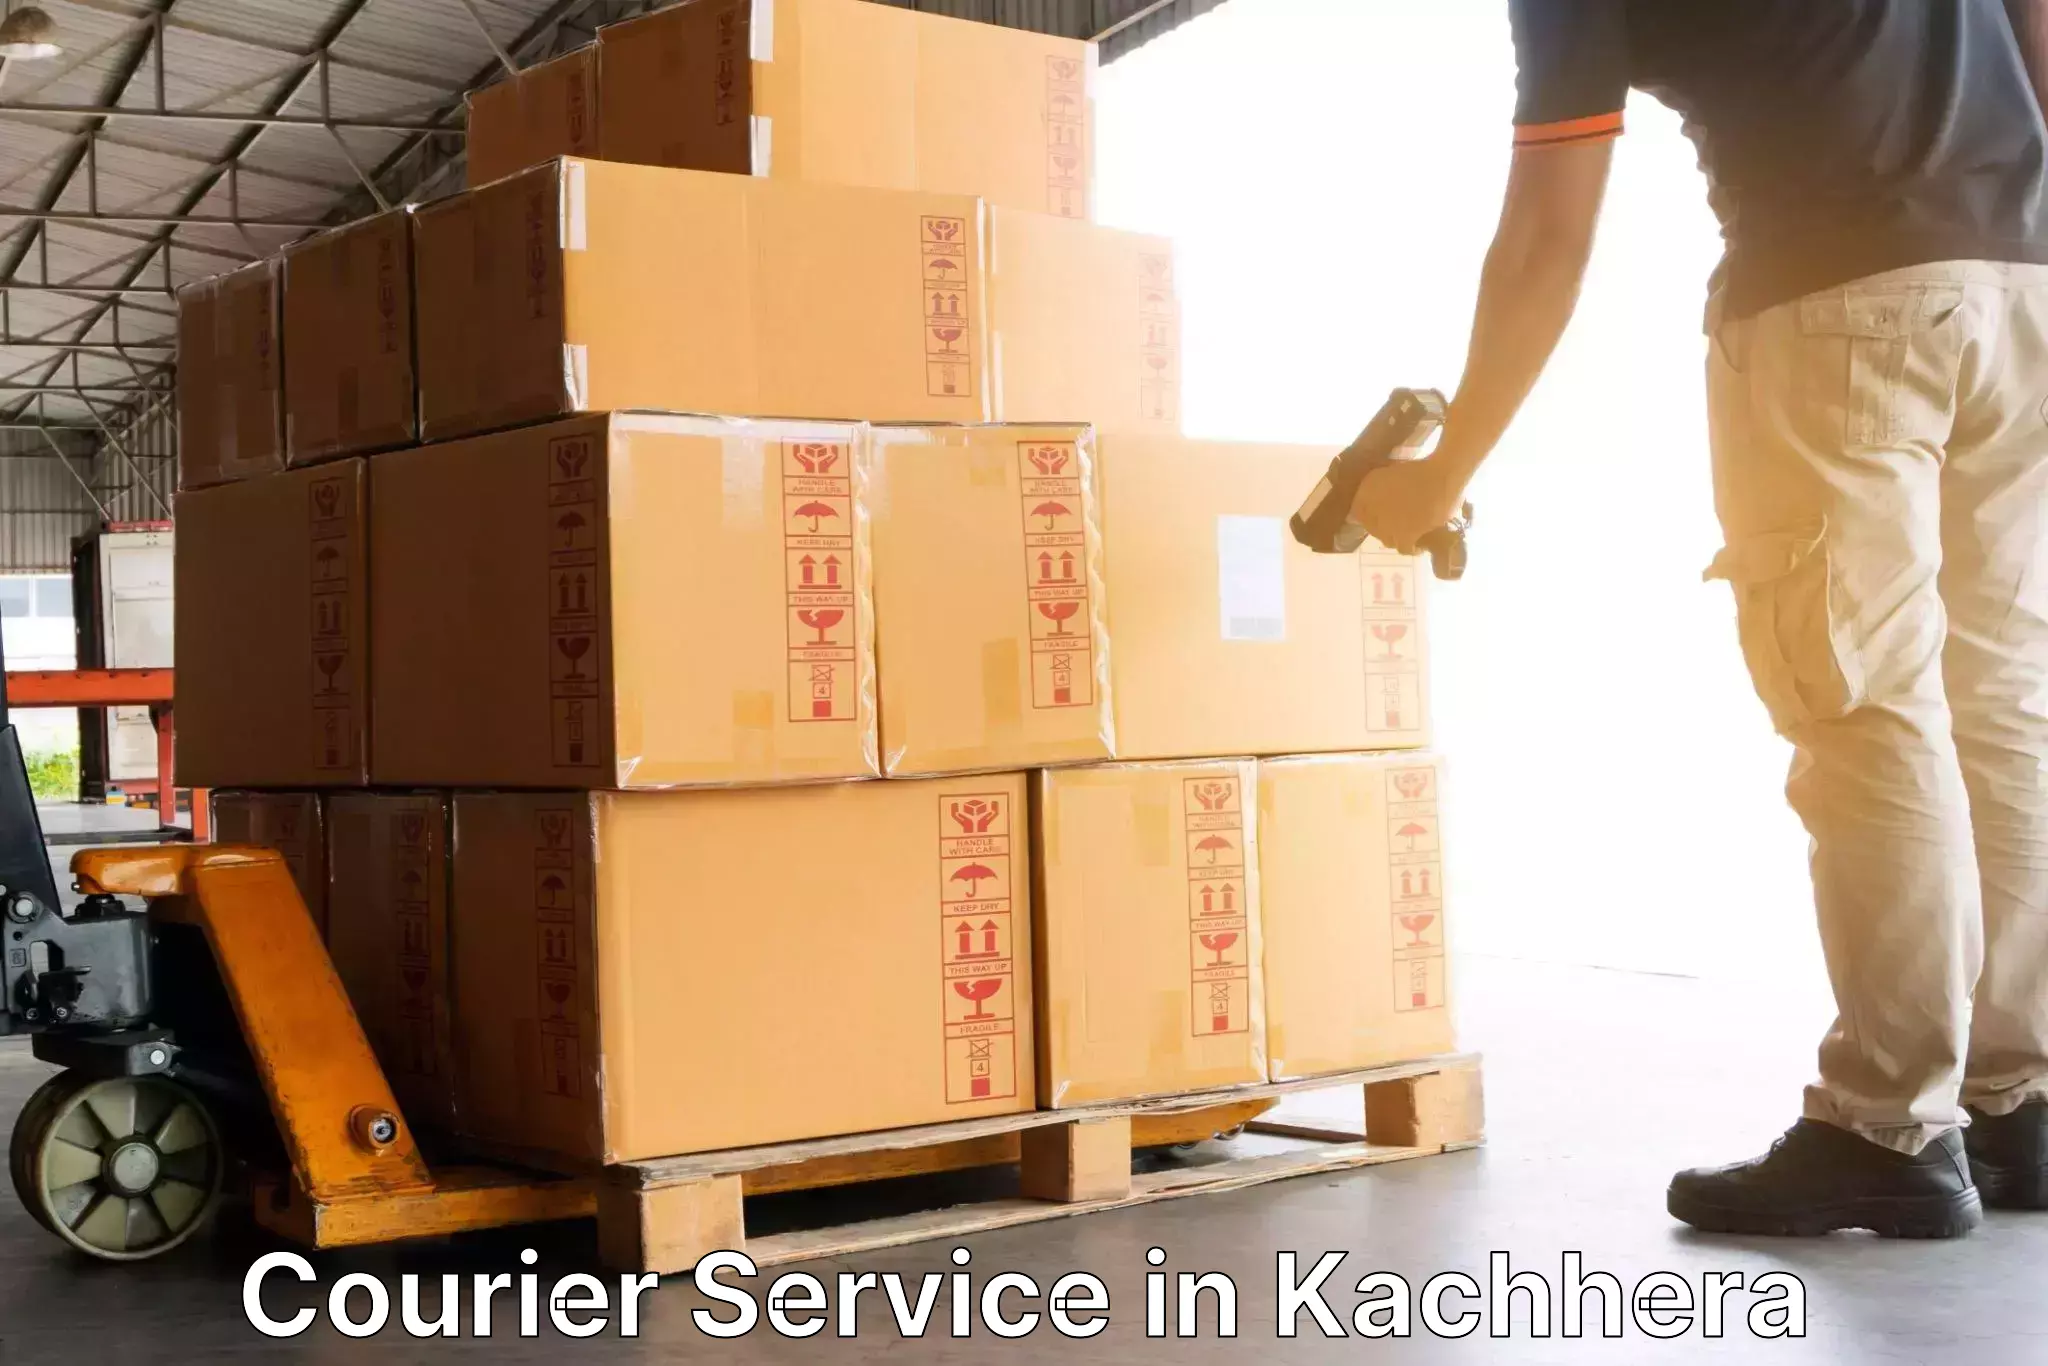 Remote area delivery in Kachhera